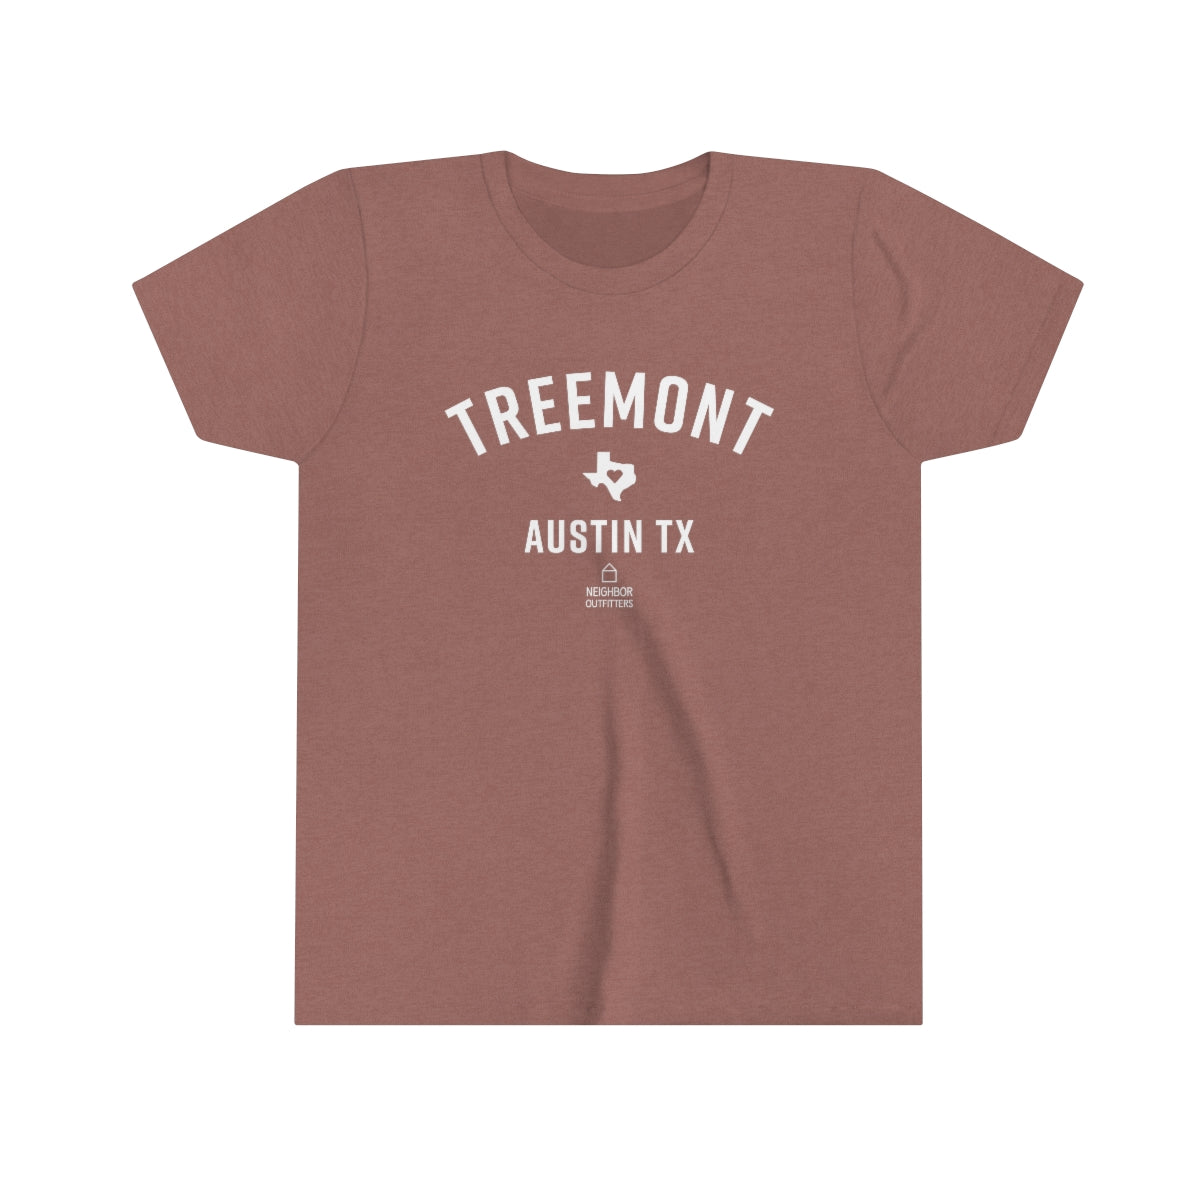 Kids Treemont T-shirt: "Full Hearts"